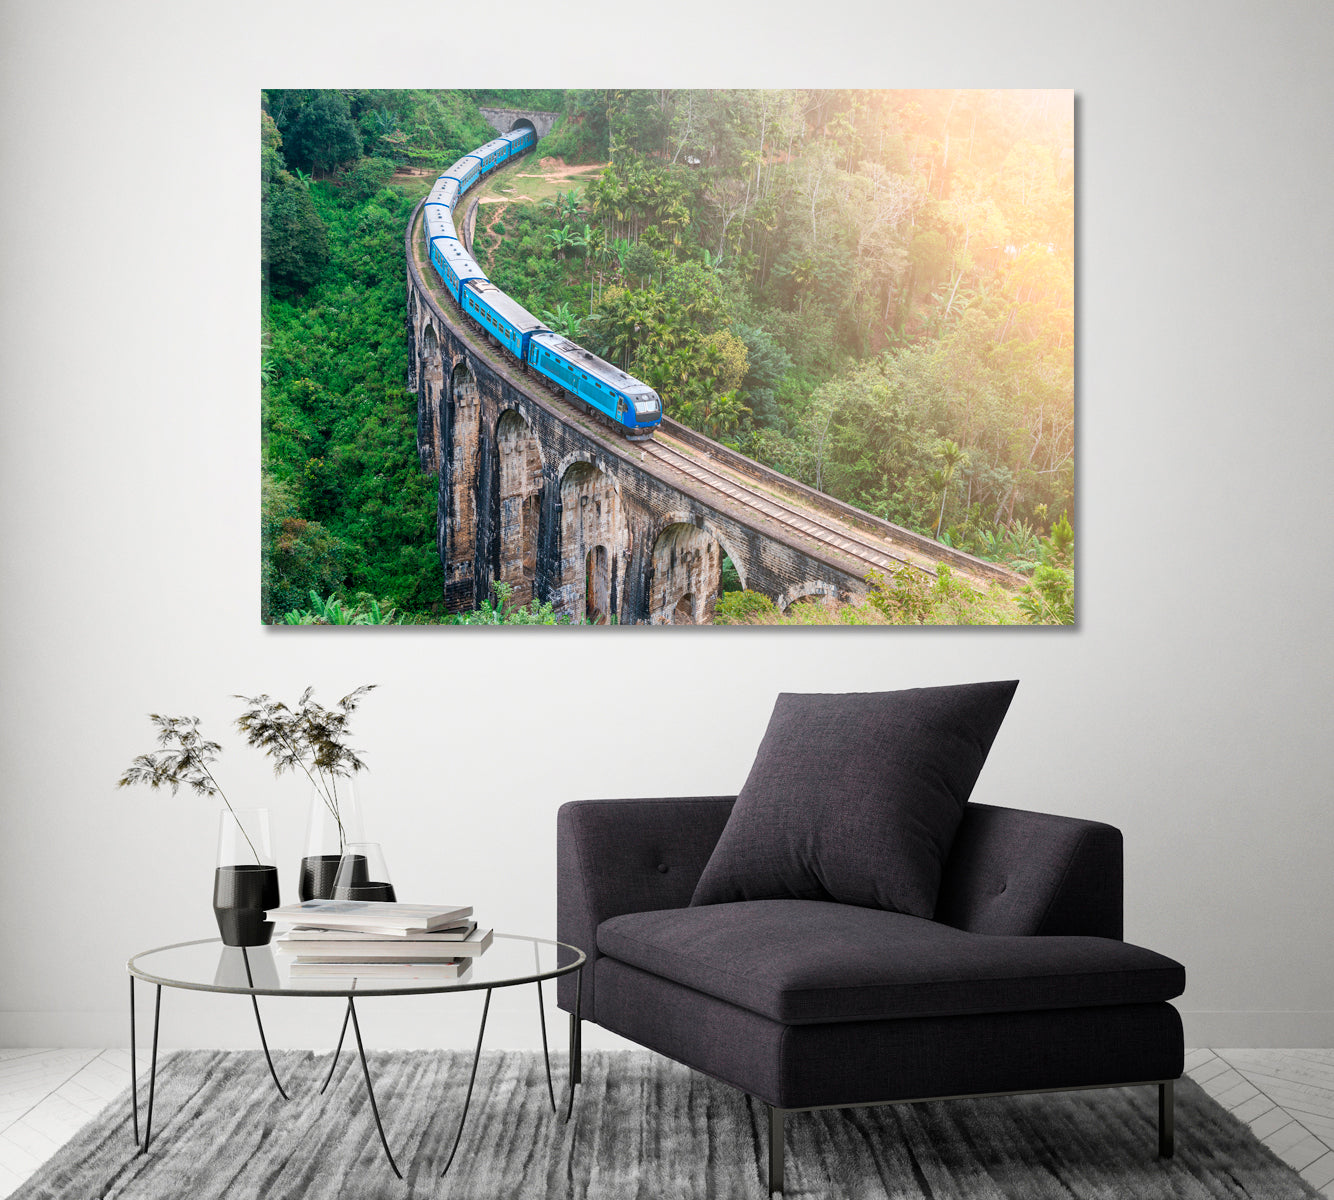 Train in Jungle of Sri Lanka Canvas Print ArtLexy 1 Panel 24"x16" inches 